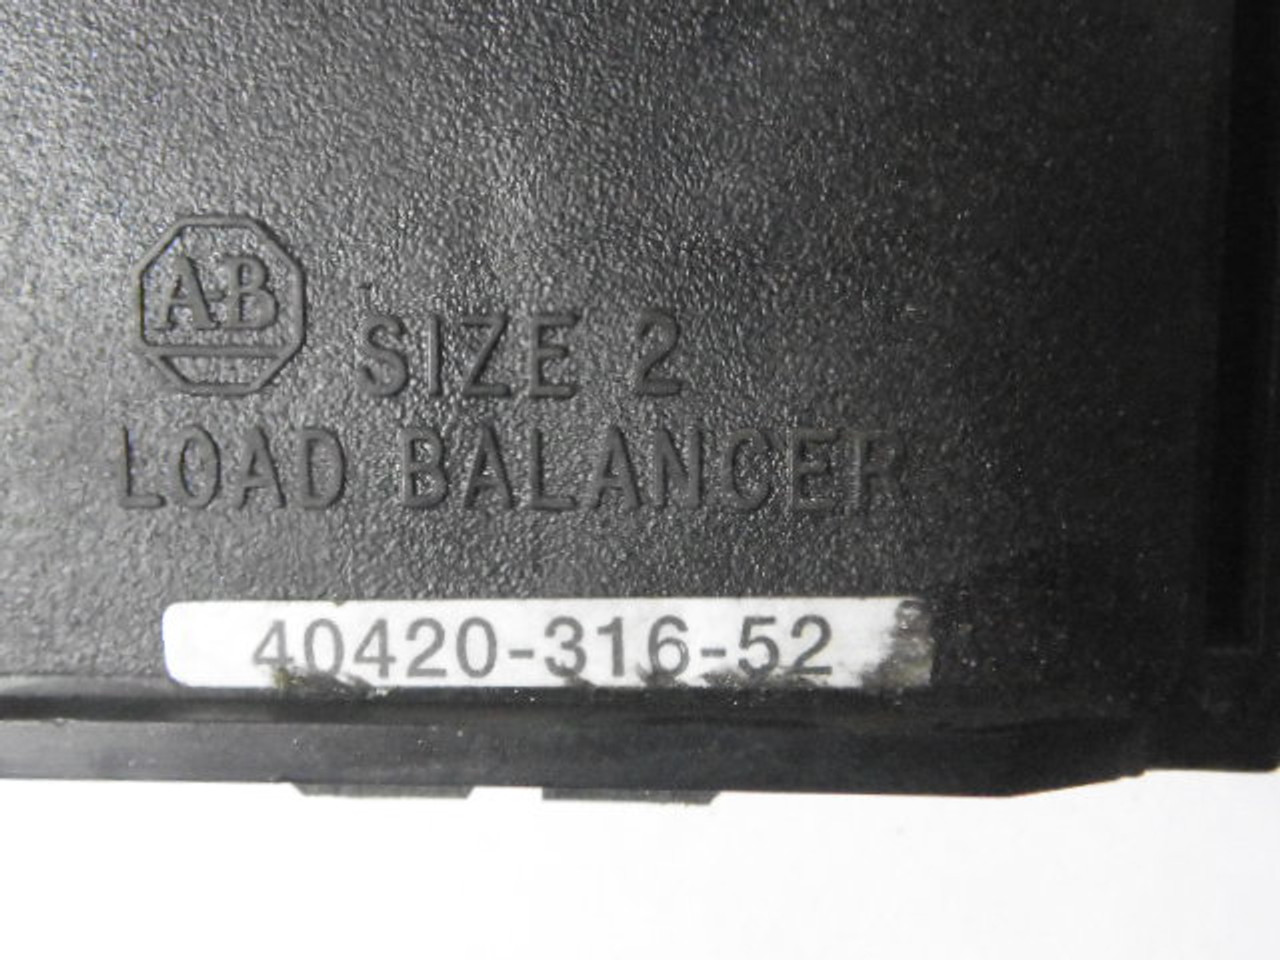 Allen-Bradley 40420-316-52 Load Balancer For Contactor/Starter USED